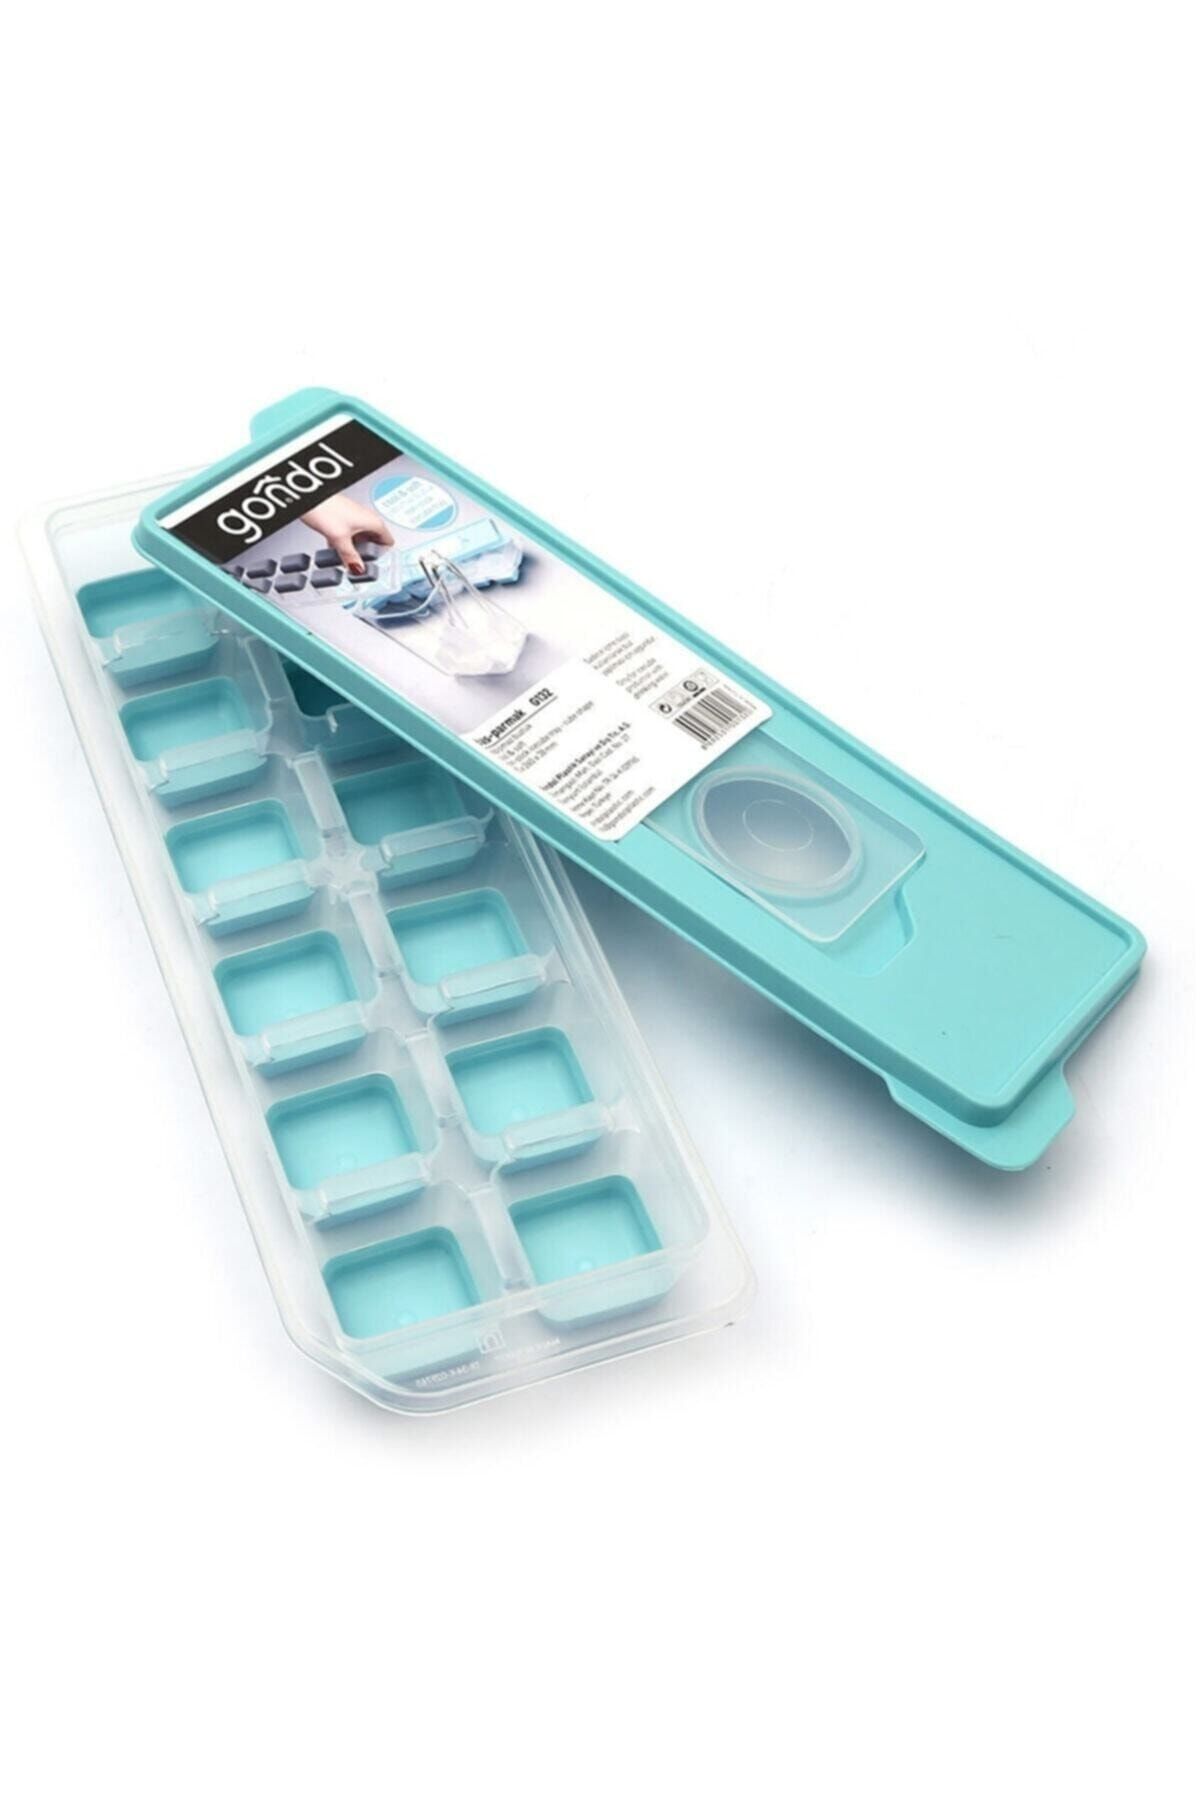 Gondol Bas Parmak Silikon Buz Kalıbı 2 Adet 12 Bölmeli Buz Kalıbı Silikon Buzluk Fma00295